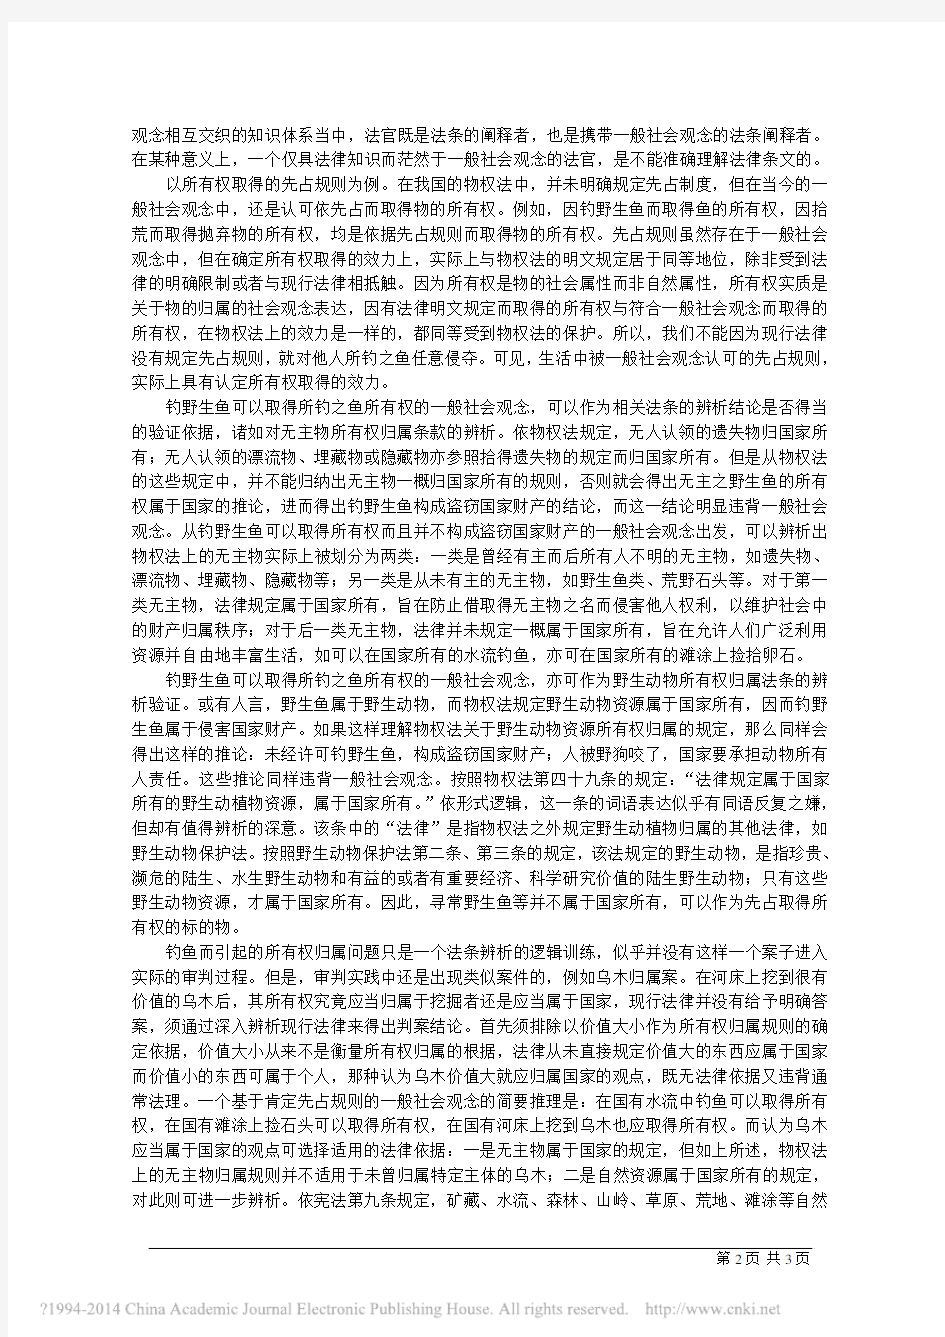 审判中的法条辨析与一般社会观念考量 - 中国法学网